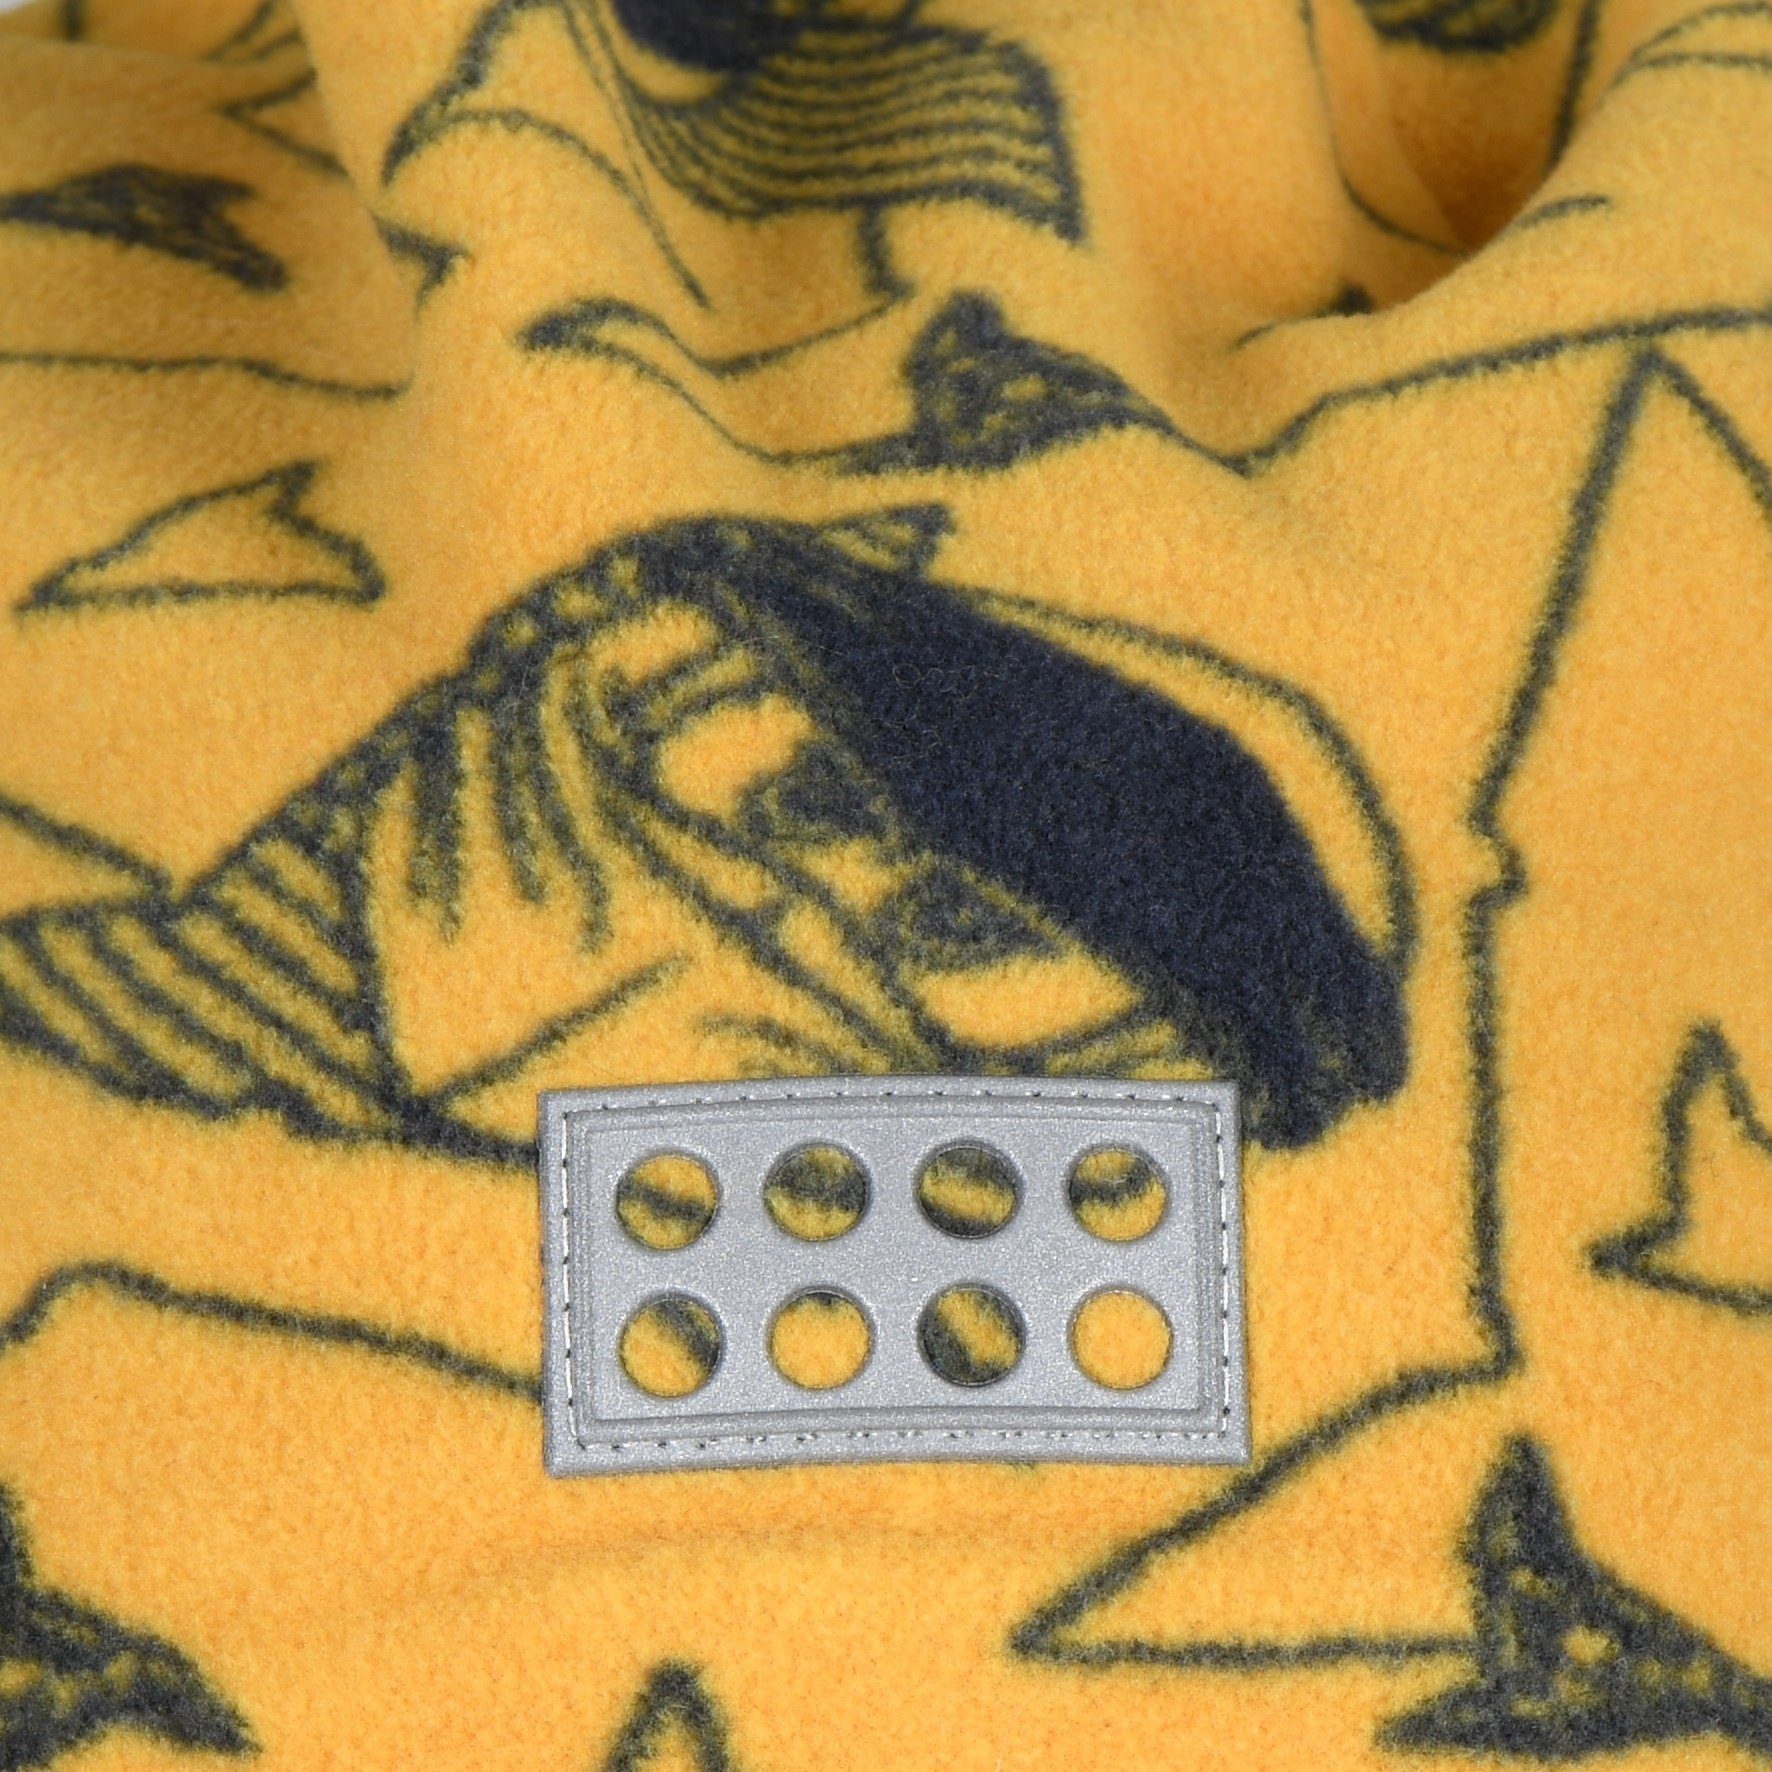 Beanie - Wear (1-St., LEGO® LWASMUS 1) Yellow HAT 709